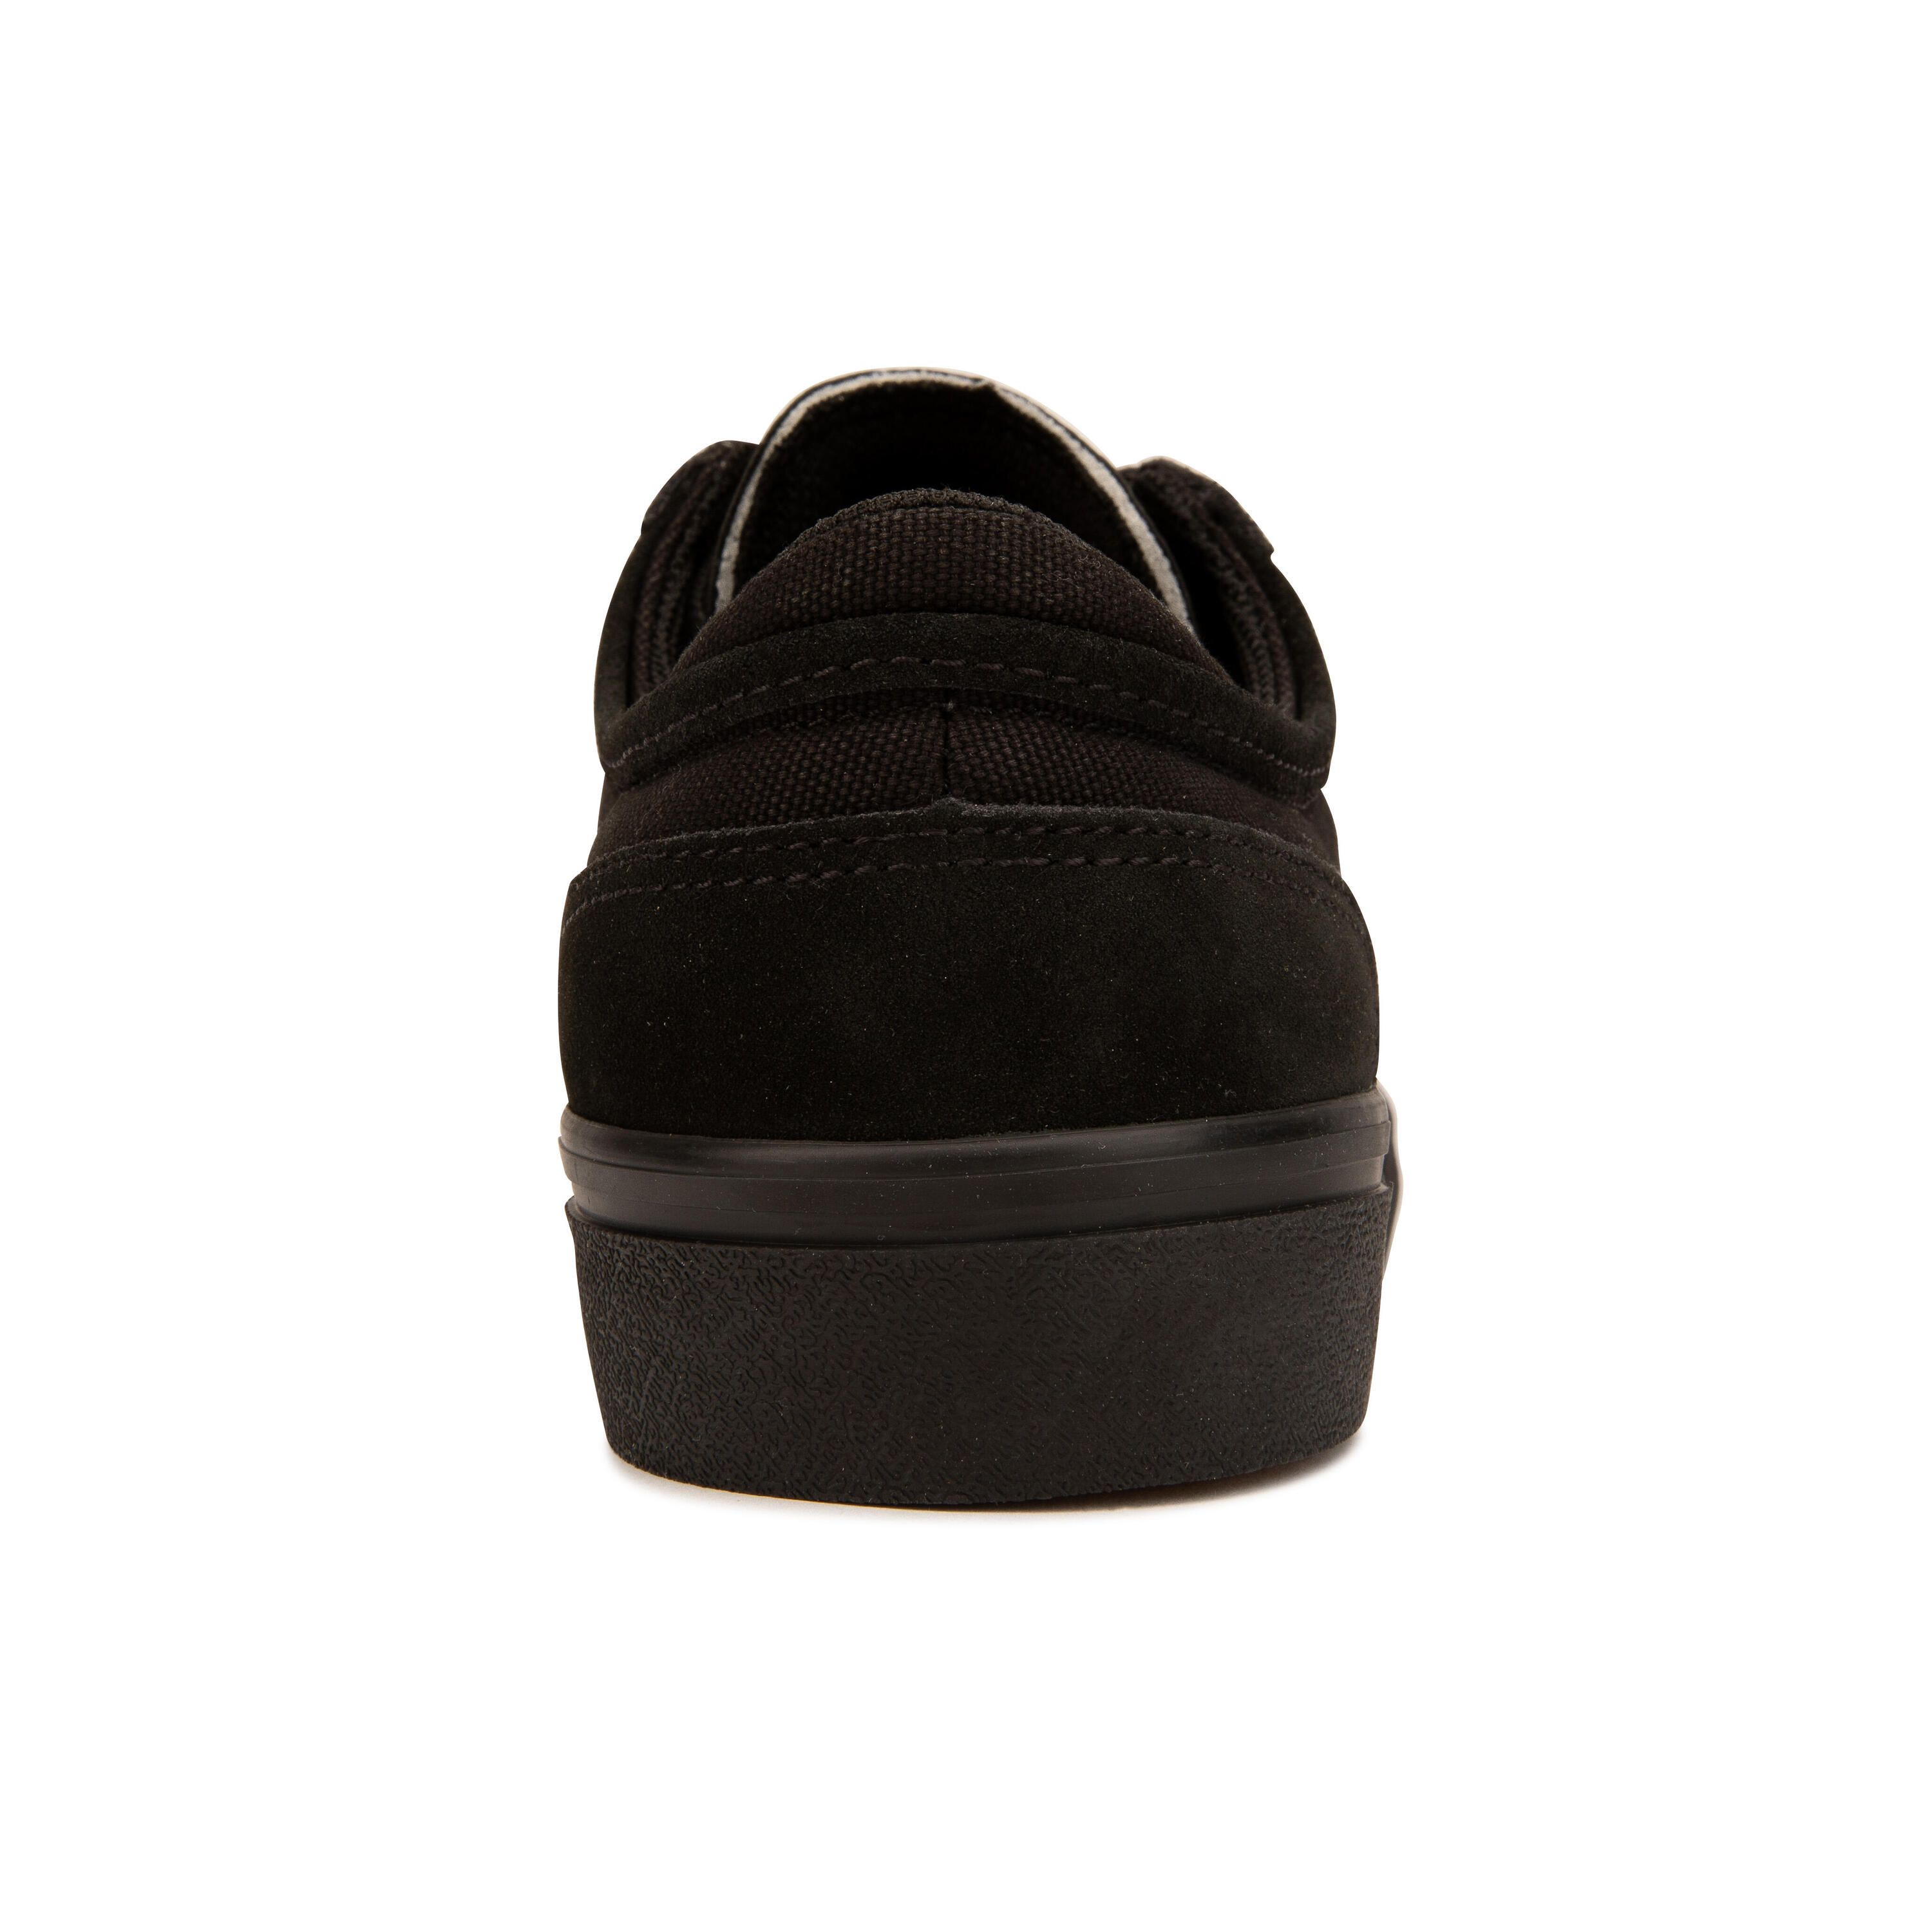 Adult Vulcanised Skate Shoes Vulca 500 II - Black/Black 8/17